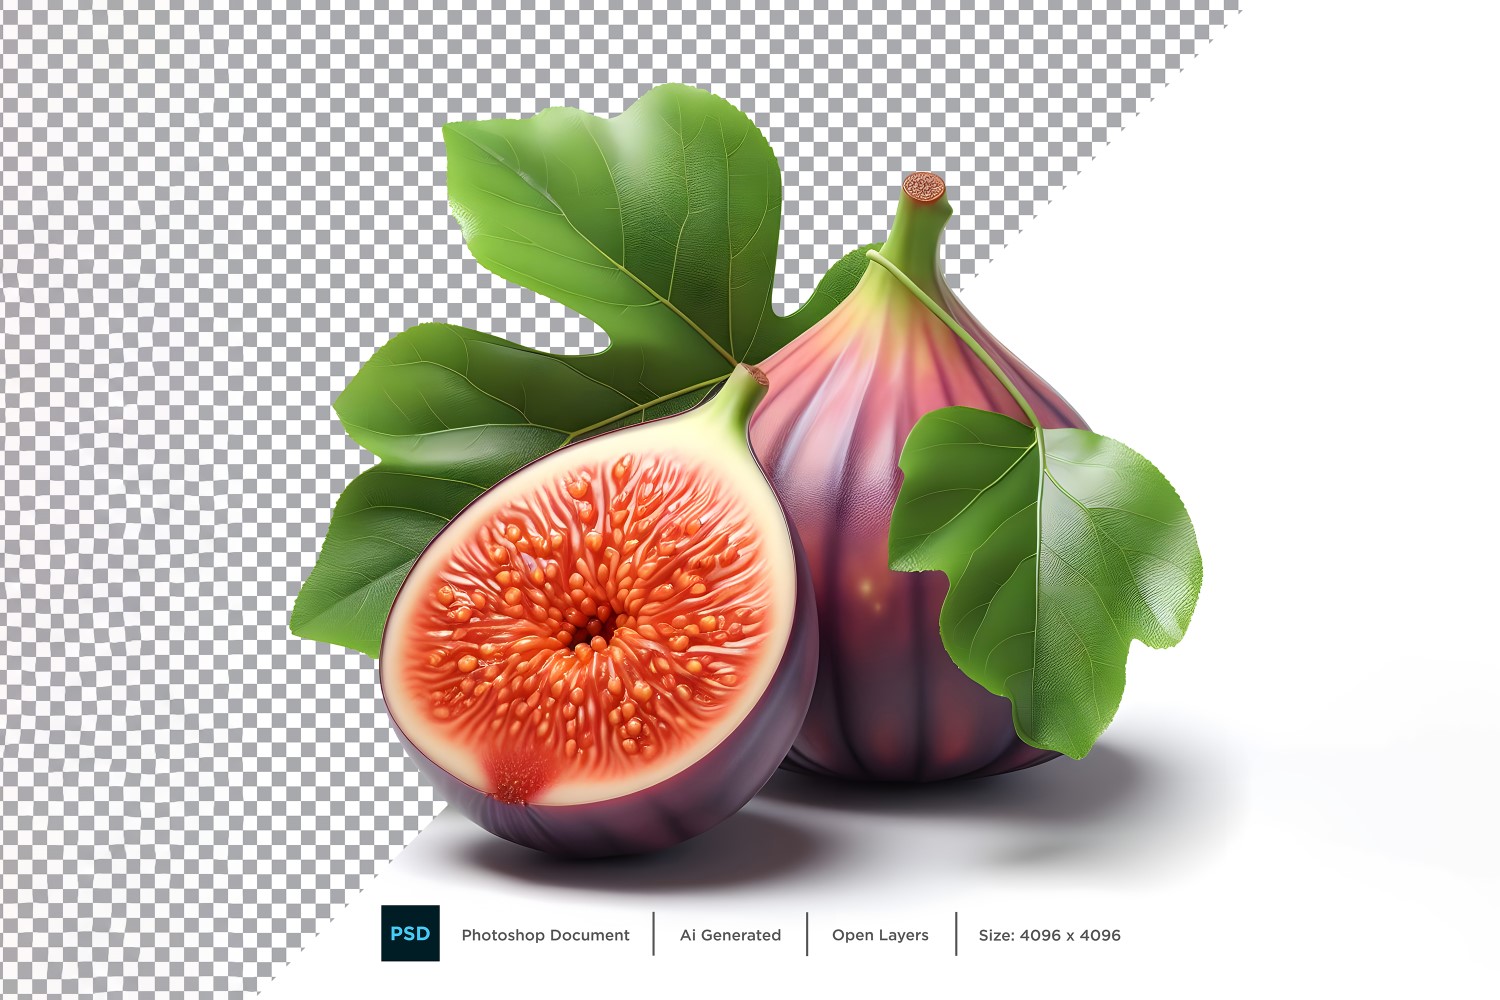 Fig Fresh fruit isolated on white background 6